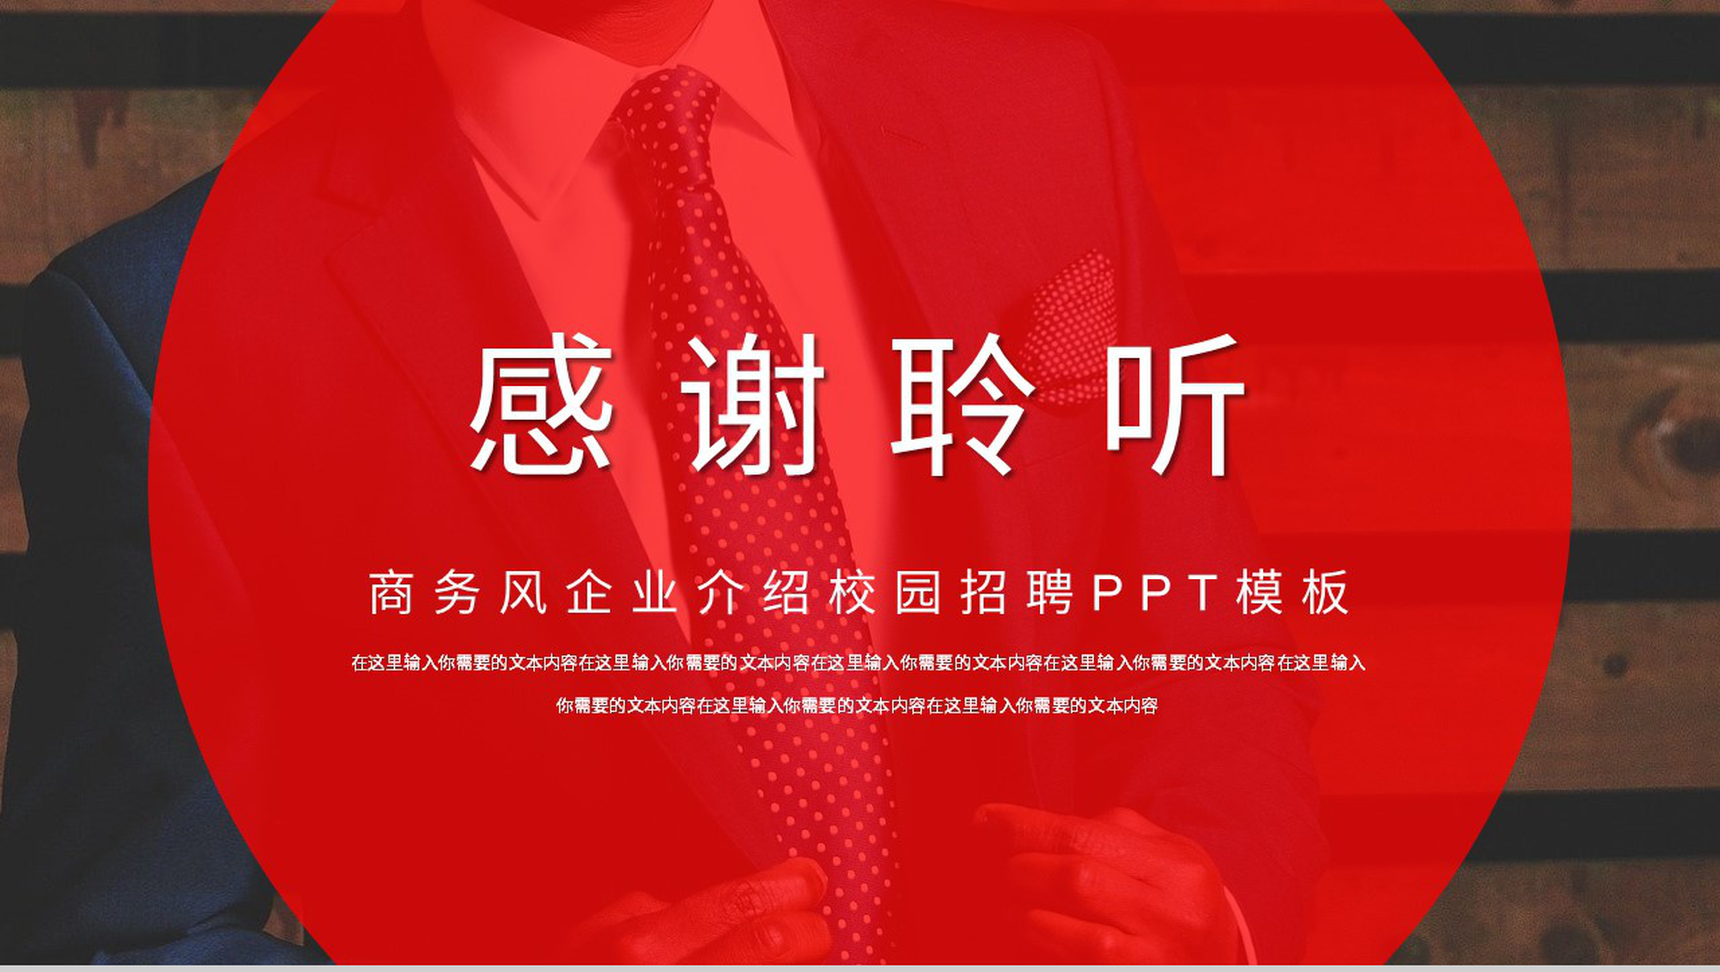 大气公司求贤企业校园招聘计划实施项目总结汇报PPT模板-11